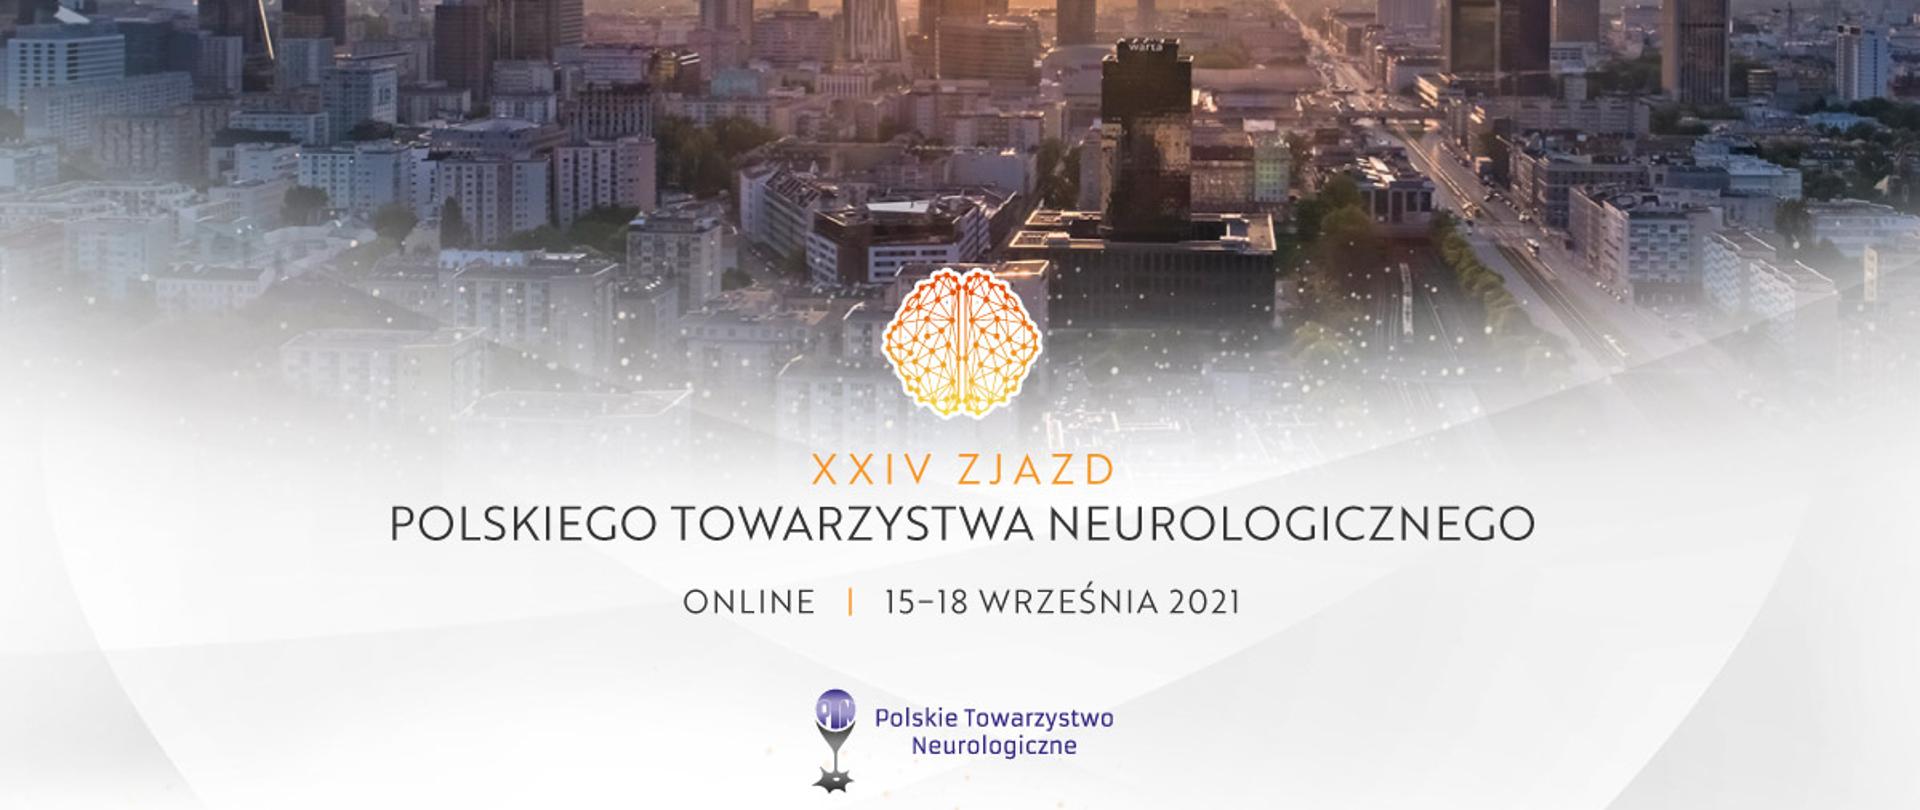 XXIV Zjazd Polskiego Towarzystwa Neurologicznego